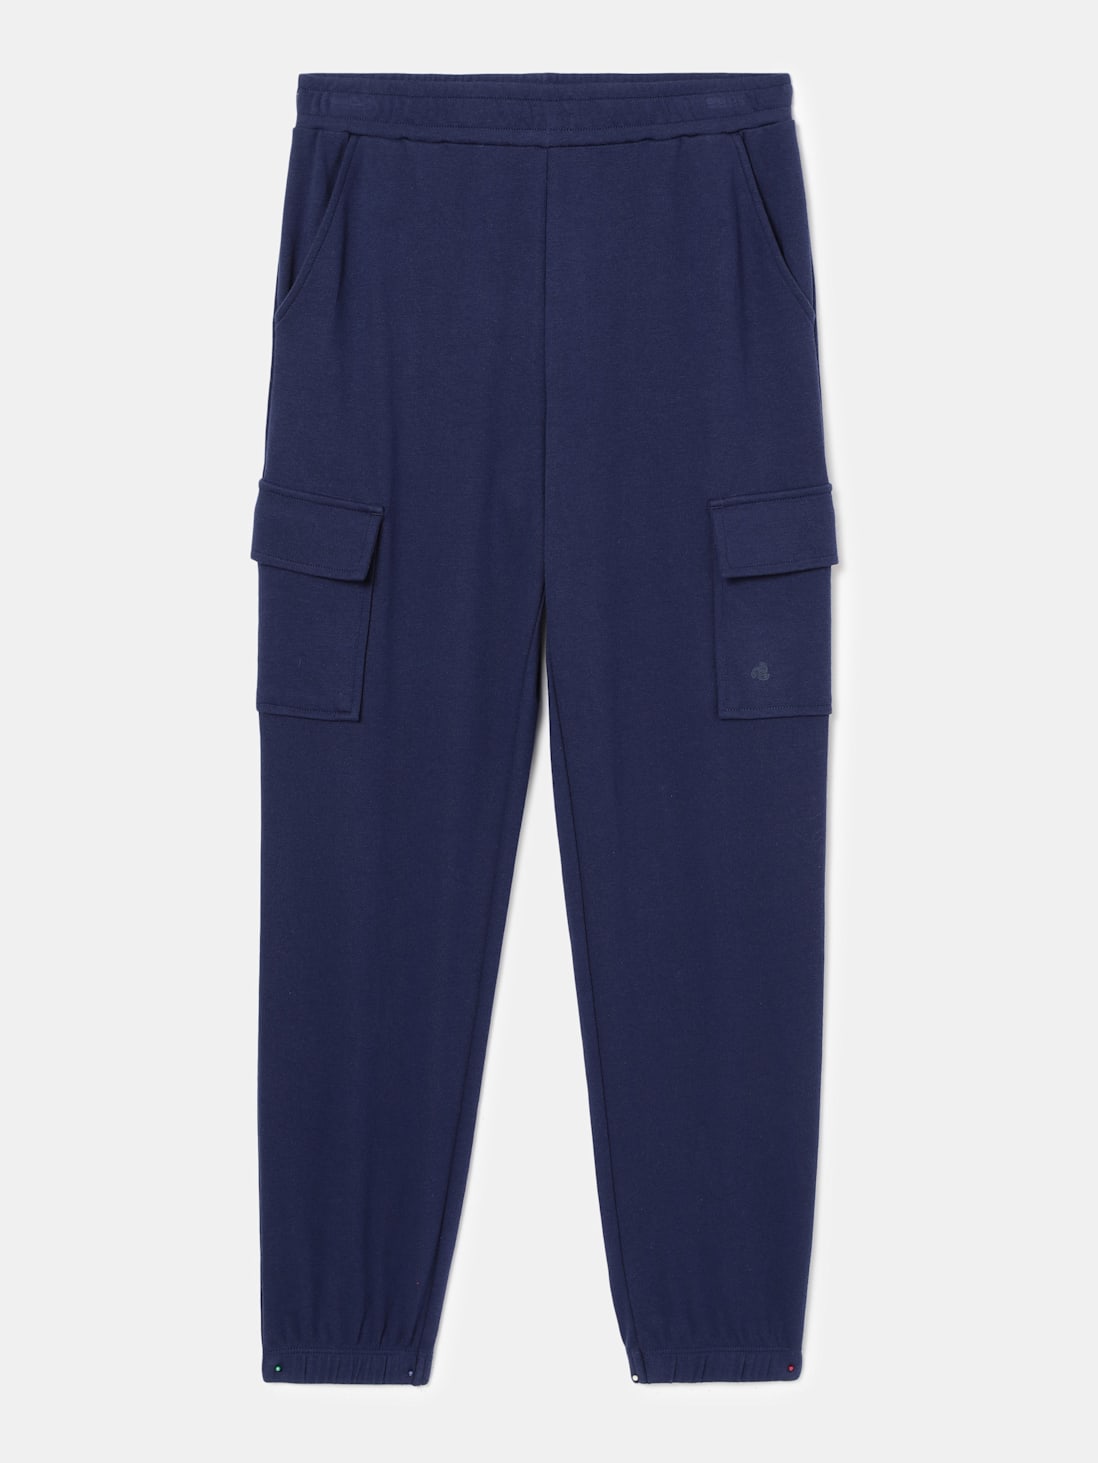 Trendy Latest Fancy Pocket Blue Denim Joggers Cargo Jeans  Pants For Girls   Women